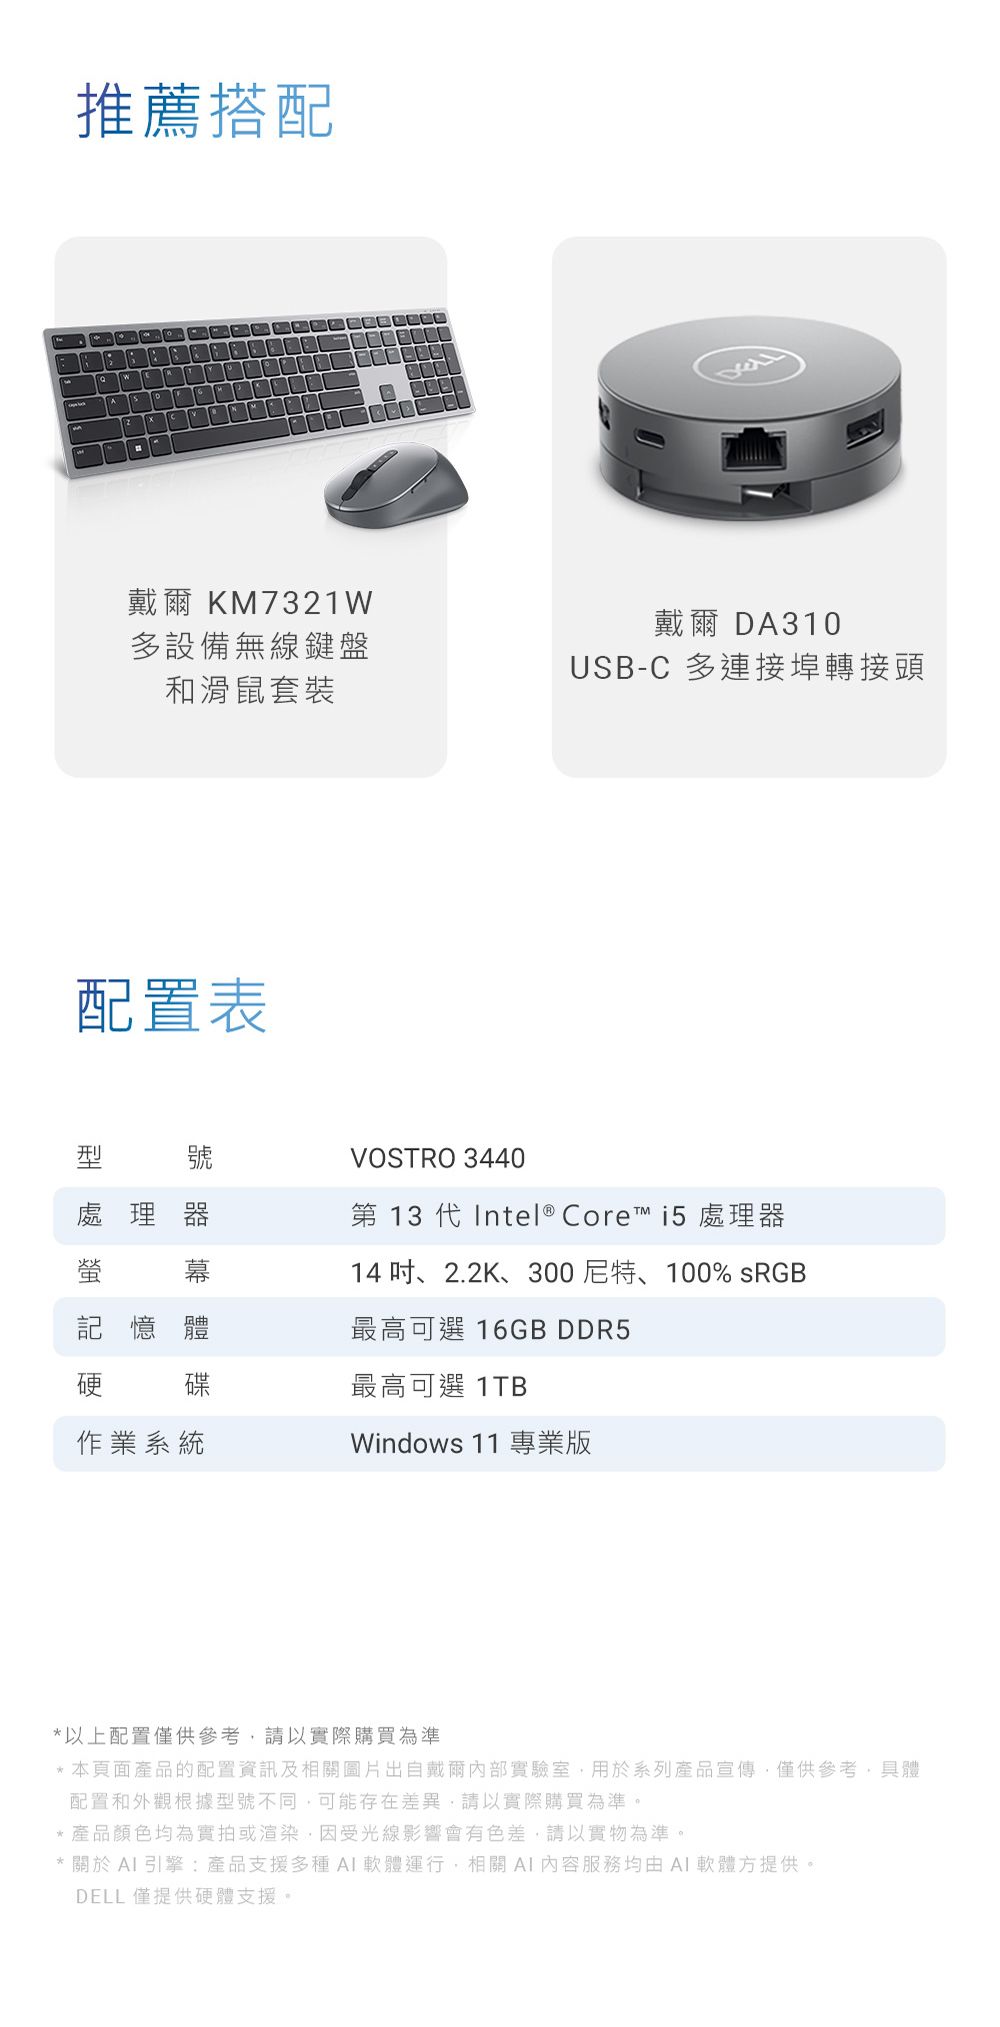 推薦搭配戴爾 KM7321W多設備無線鍵盤和滑鼠套裝戴爾DA310USB-C 多連接埠轉接頭配置表號VOSTRO 3440處理器第 13 代Intel® Core™ i5 處理器幕14 吋、2.2K、300尼特、100% sRGB記憶體最高可選 16GB DDR5硬碟最高可選 1TB作業系統Windows 11 專業版以上配置僅供參考,請以實際購買為準*本頁面產品的配置資訊及相關圖片出自戴爾內部實驗室,用於系列產品宣傳,僅供參考,具體配置和外觀根據型號不同,可能存在差異,請以實際購買為準。*產品顏色均為實拍或渲染,因受光線影響會有色差,請以實物為準。* 關於  引擎:產品支援多種軟體運行,相關AI內容服務均由AI軟體方提供。DELL 僅提供硬體支援。